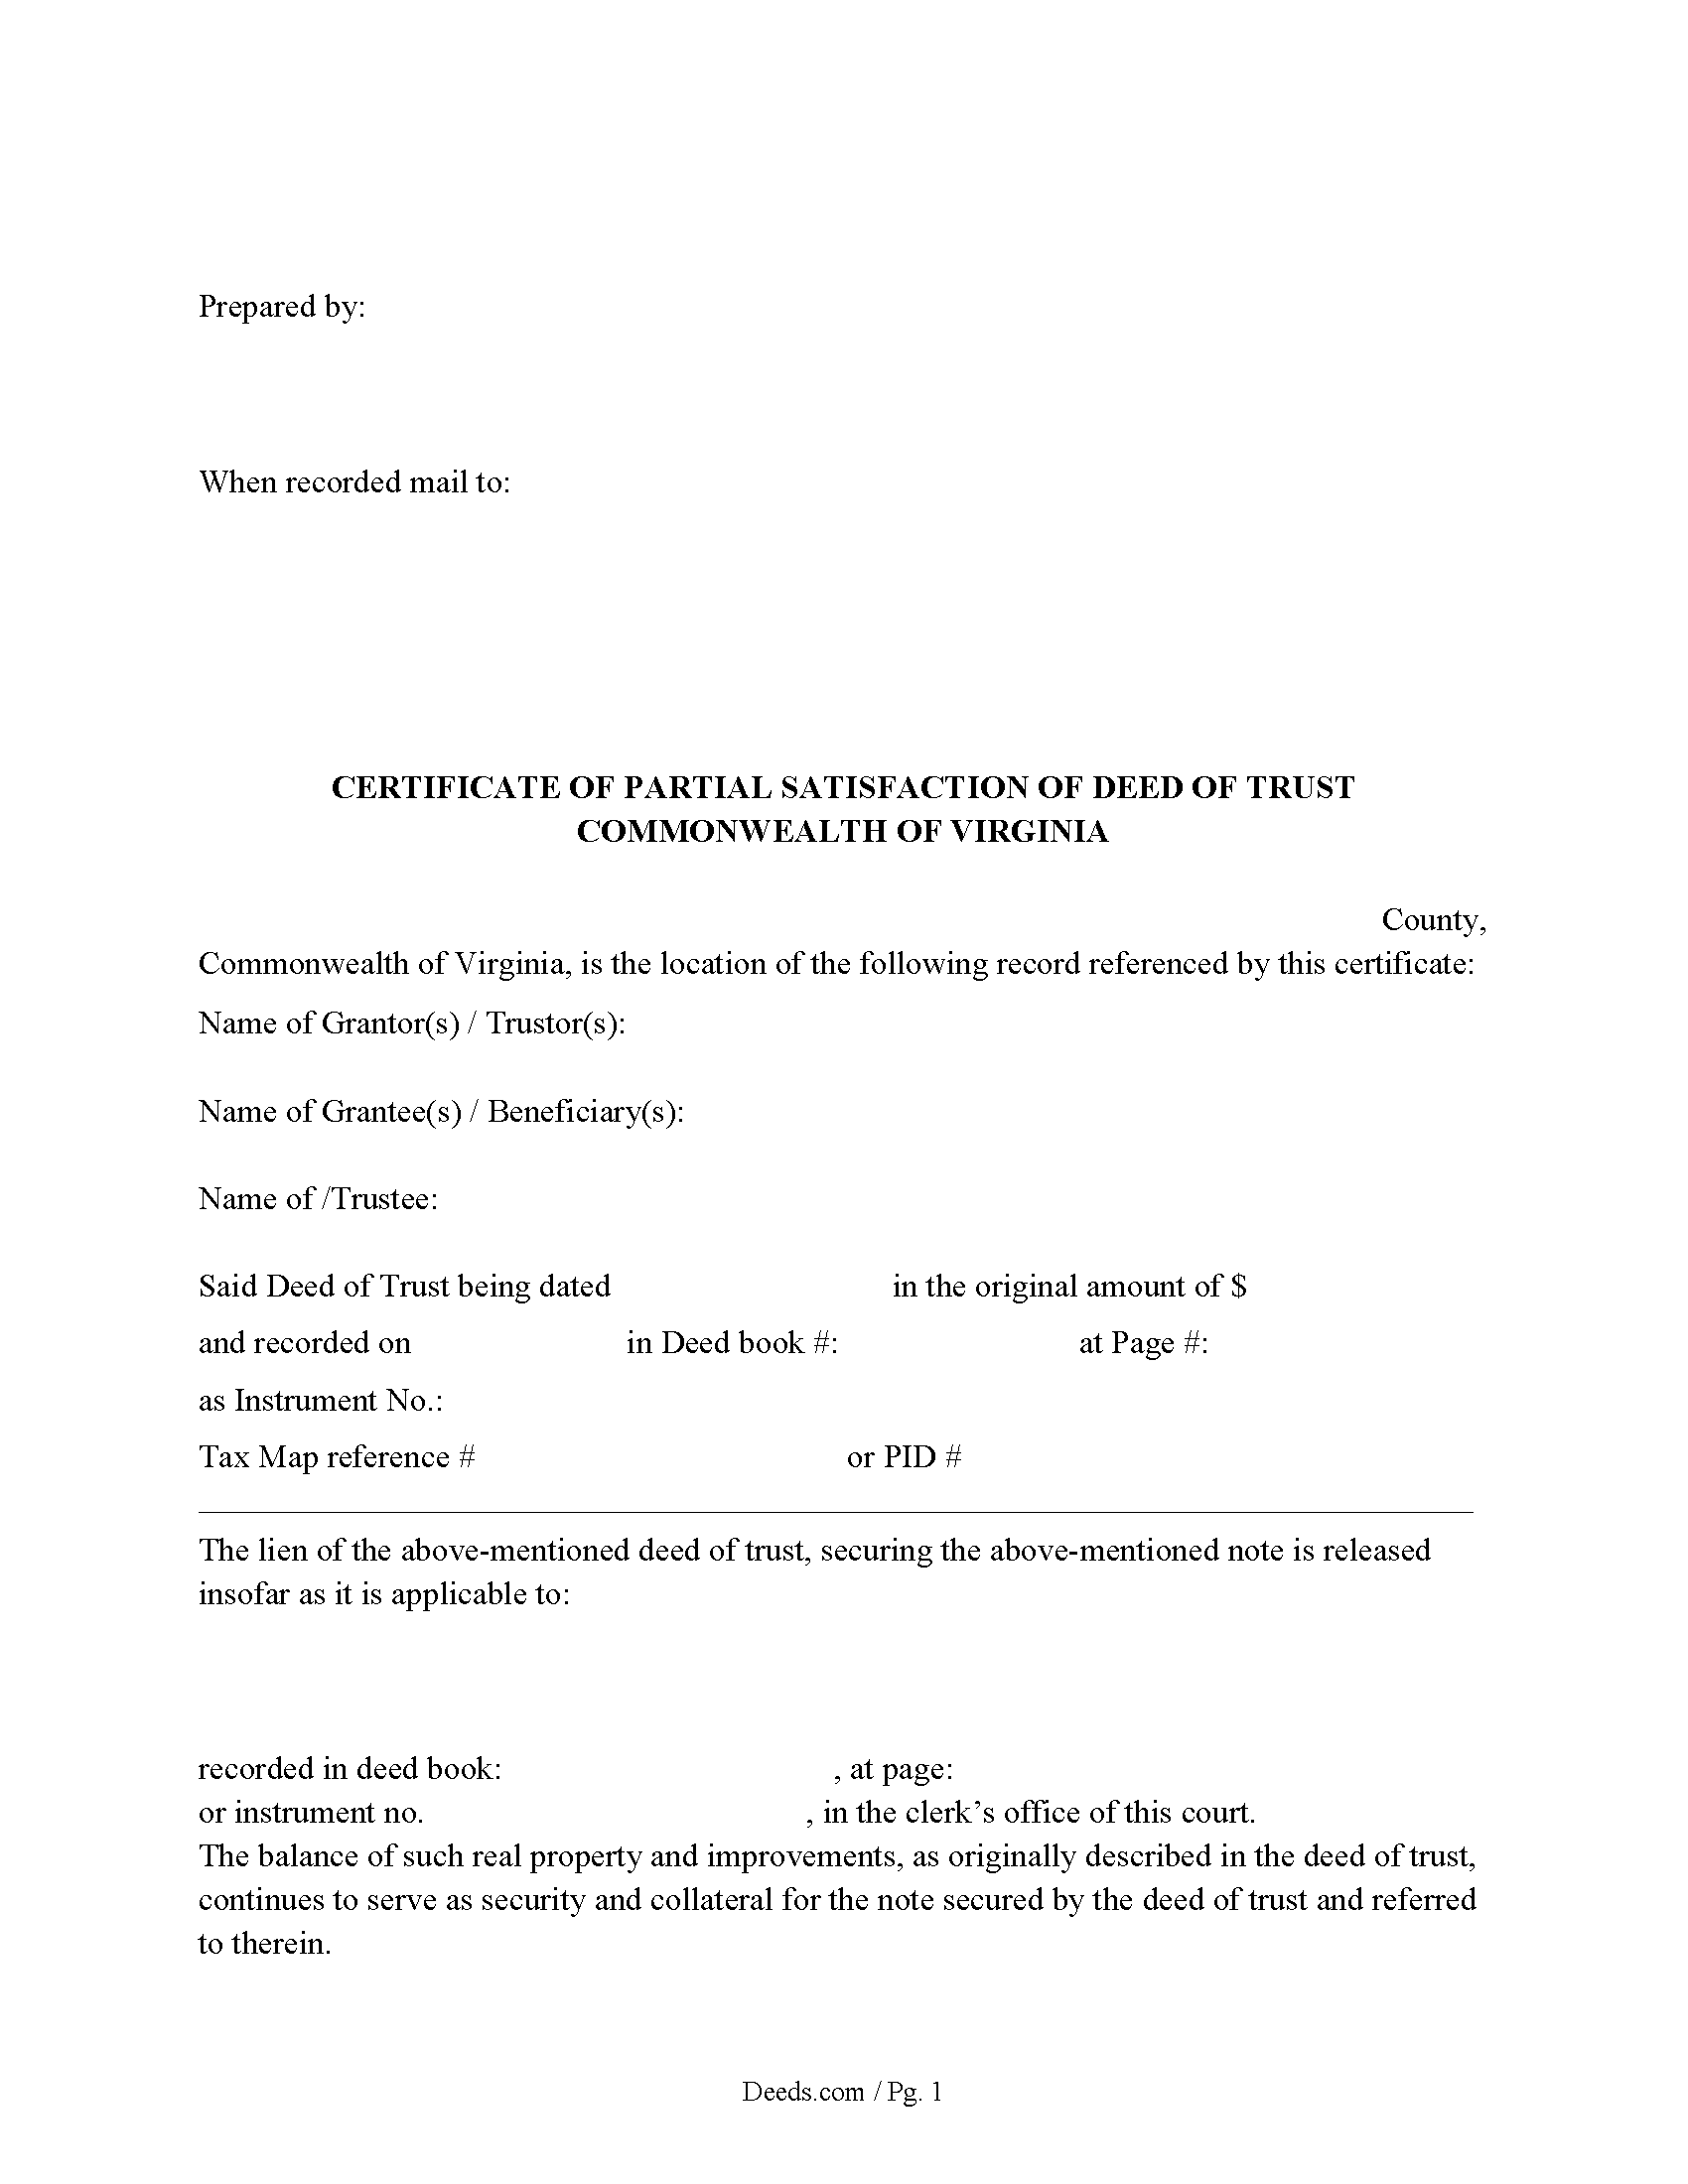 Certificate of Partial Satisfaction of Deed of Trust